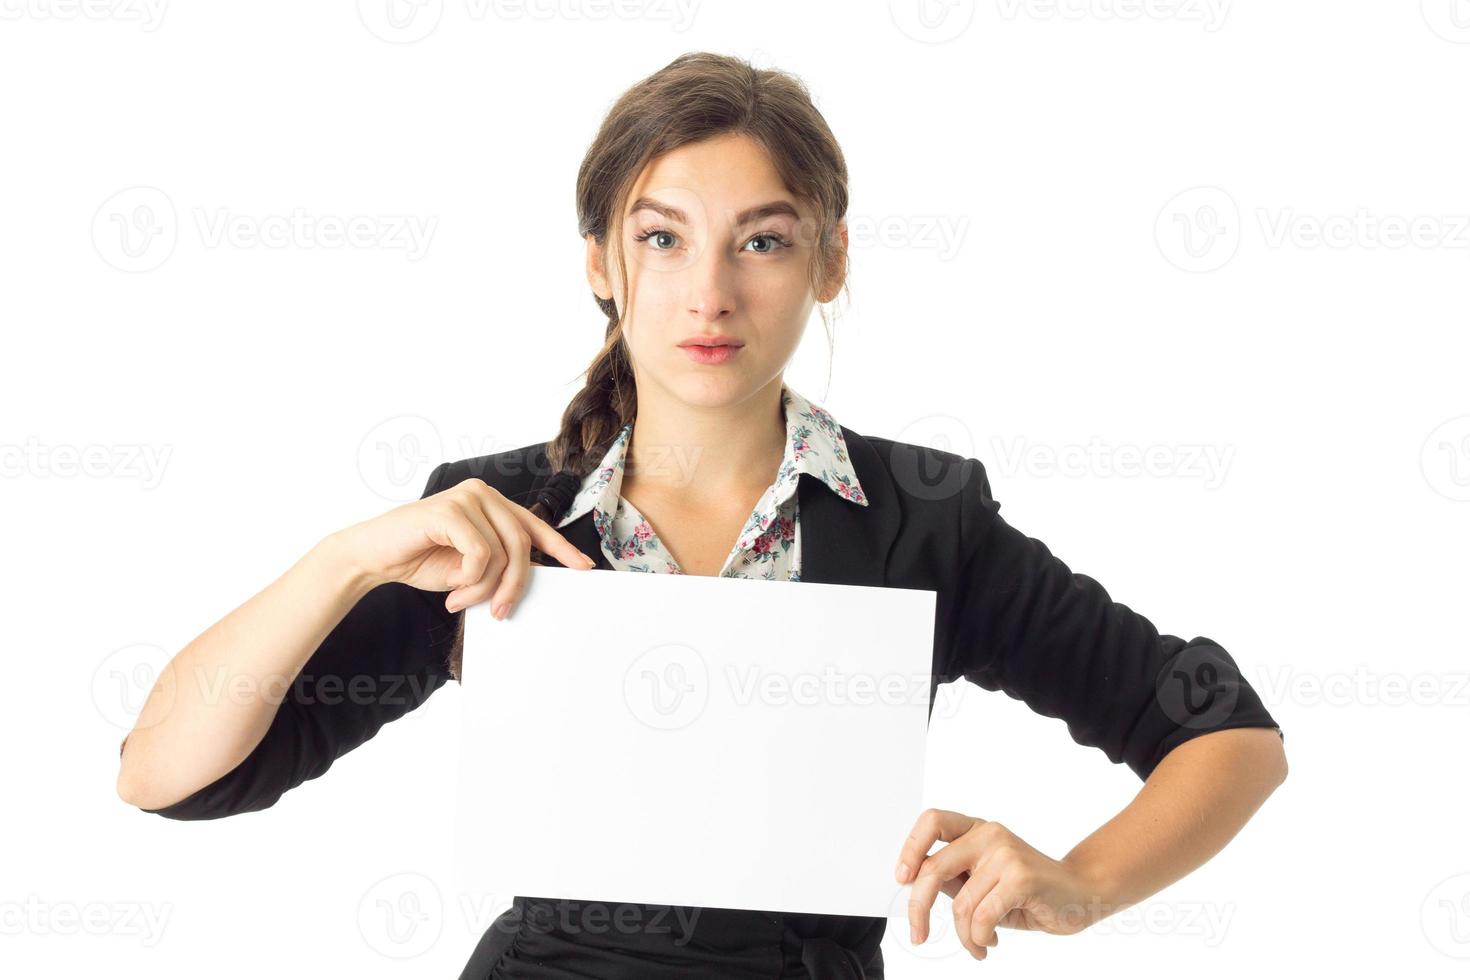 mulher de uniforme com cartaz branco nas mãos foto